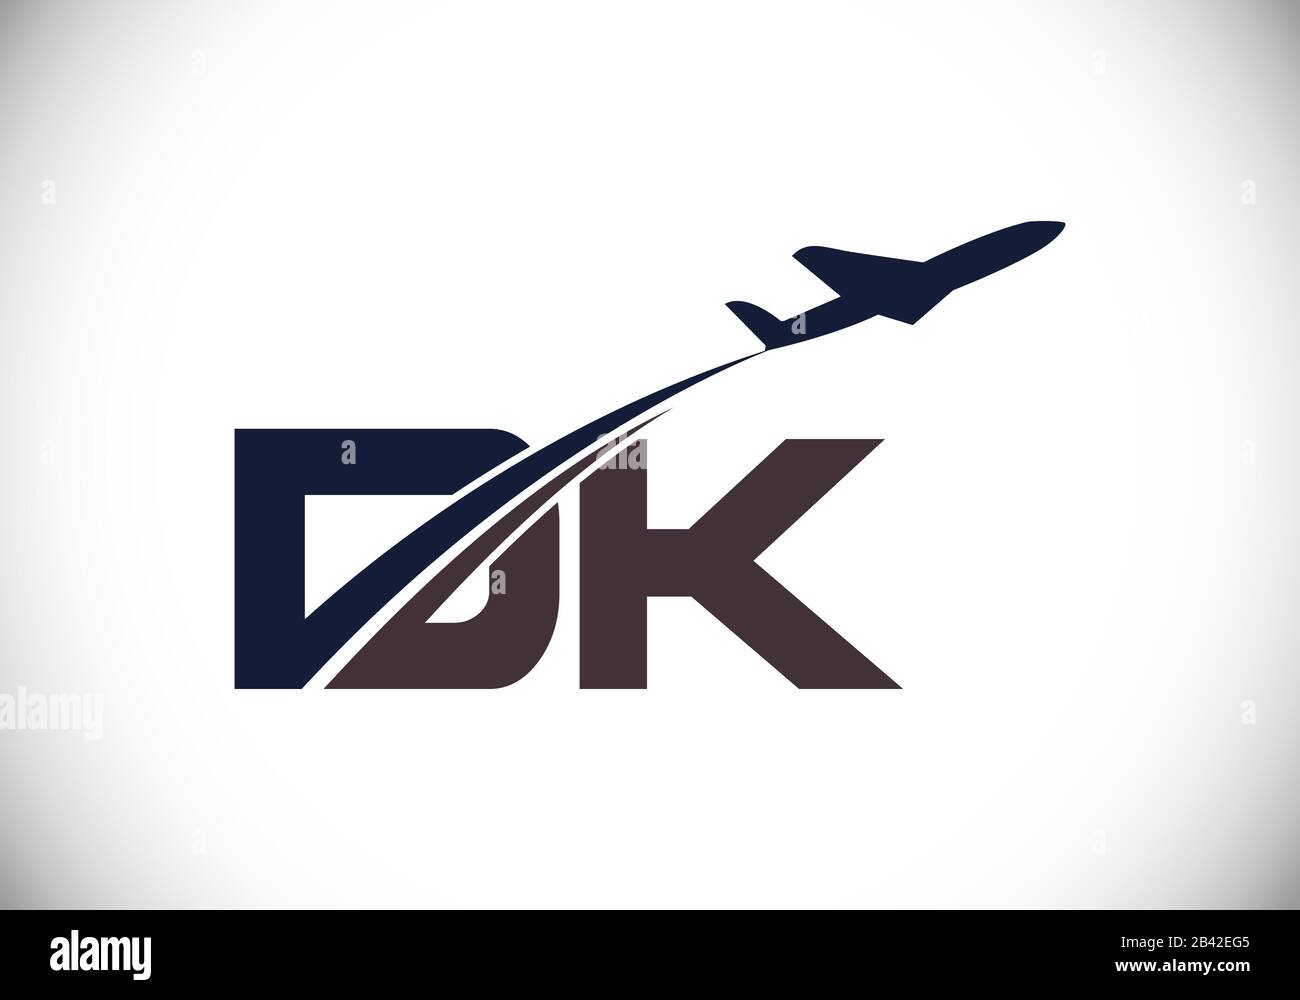 Lettera iniziale D e K con logo Aviation, modello Air, Airline, Airplane e Travel Logo. Illustrazione Vettoriale